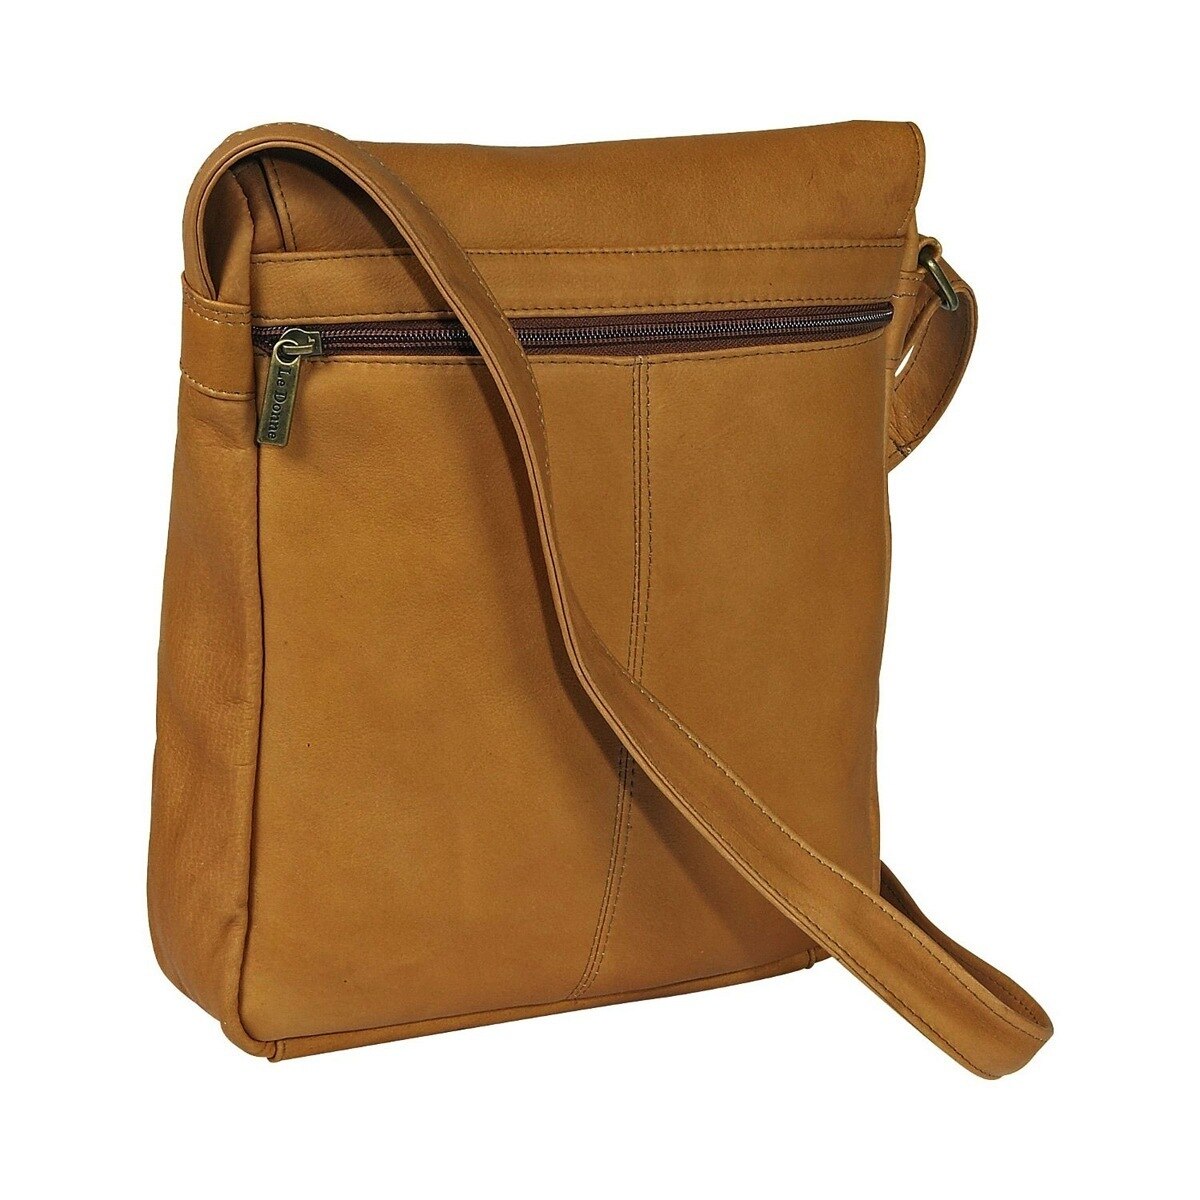 Le Donne Leather Vertical Flap Over Shoulder Bag H-149R - image 3 of 5